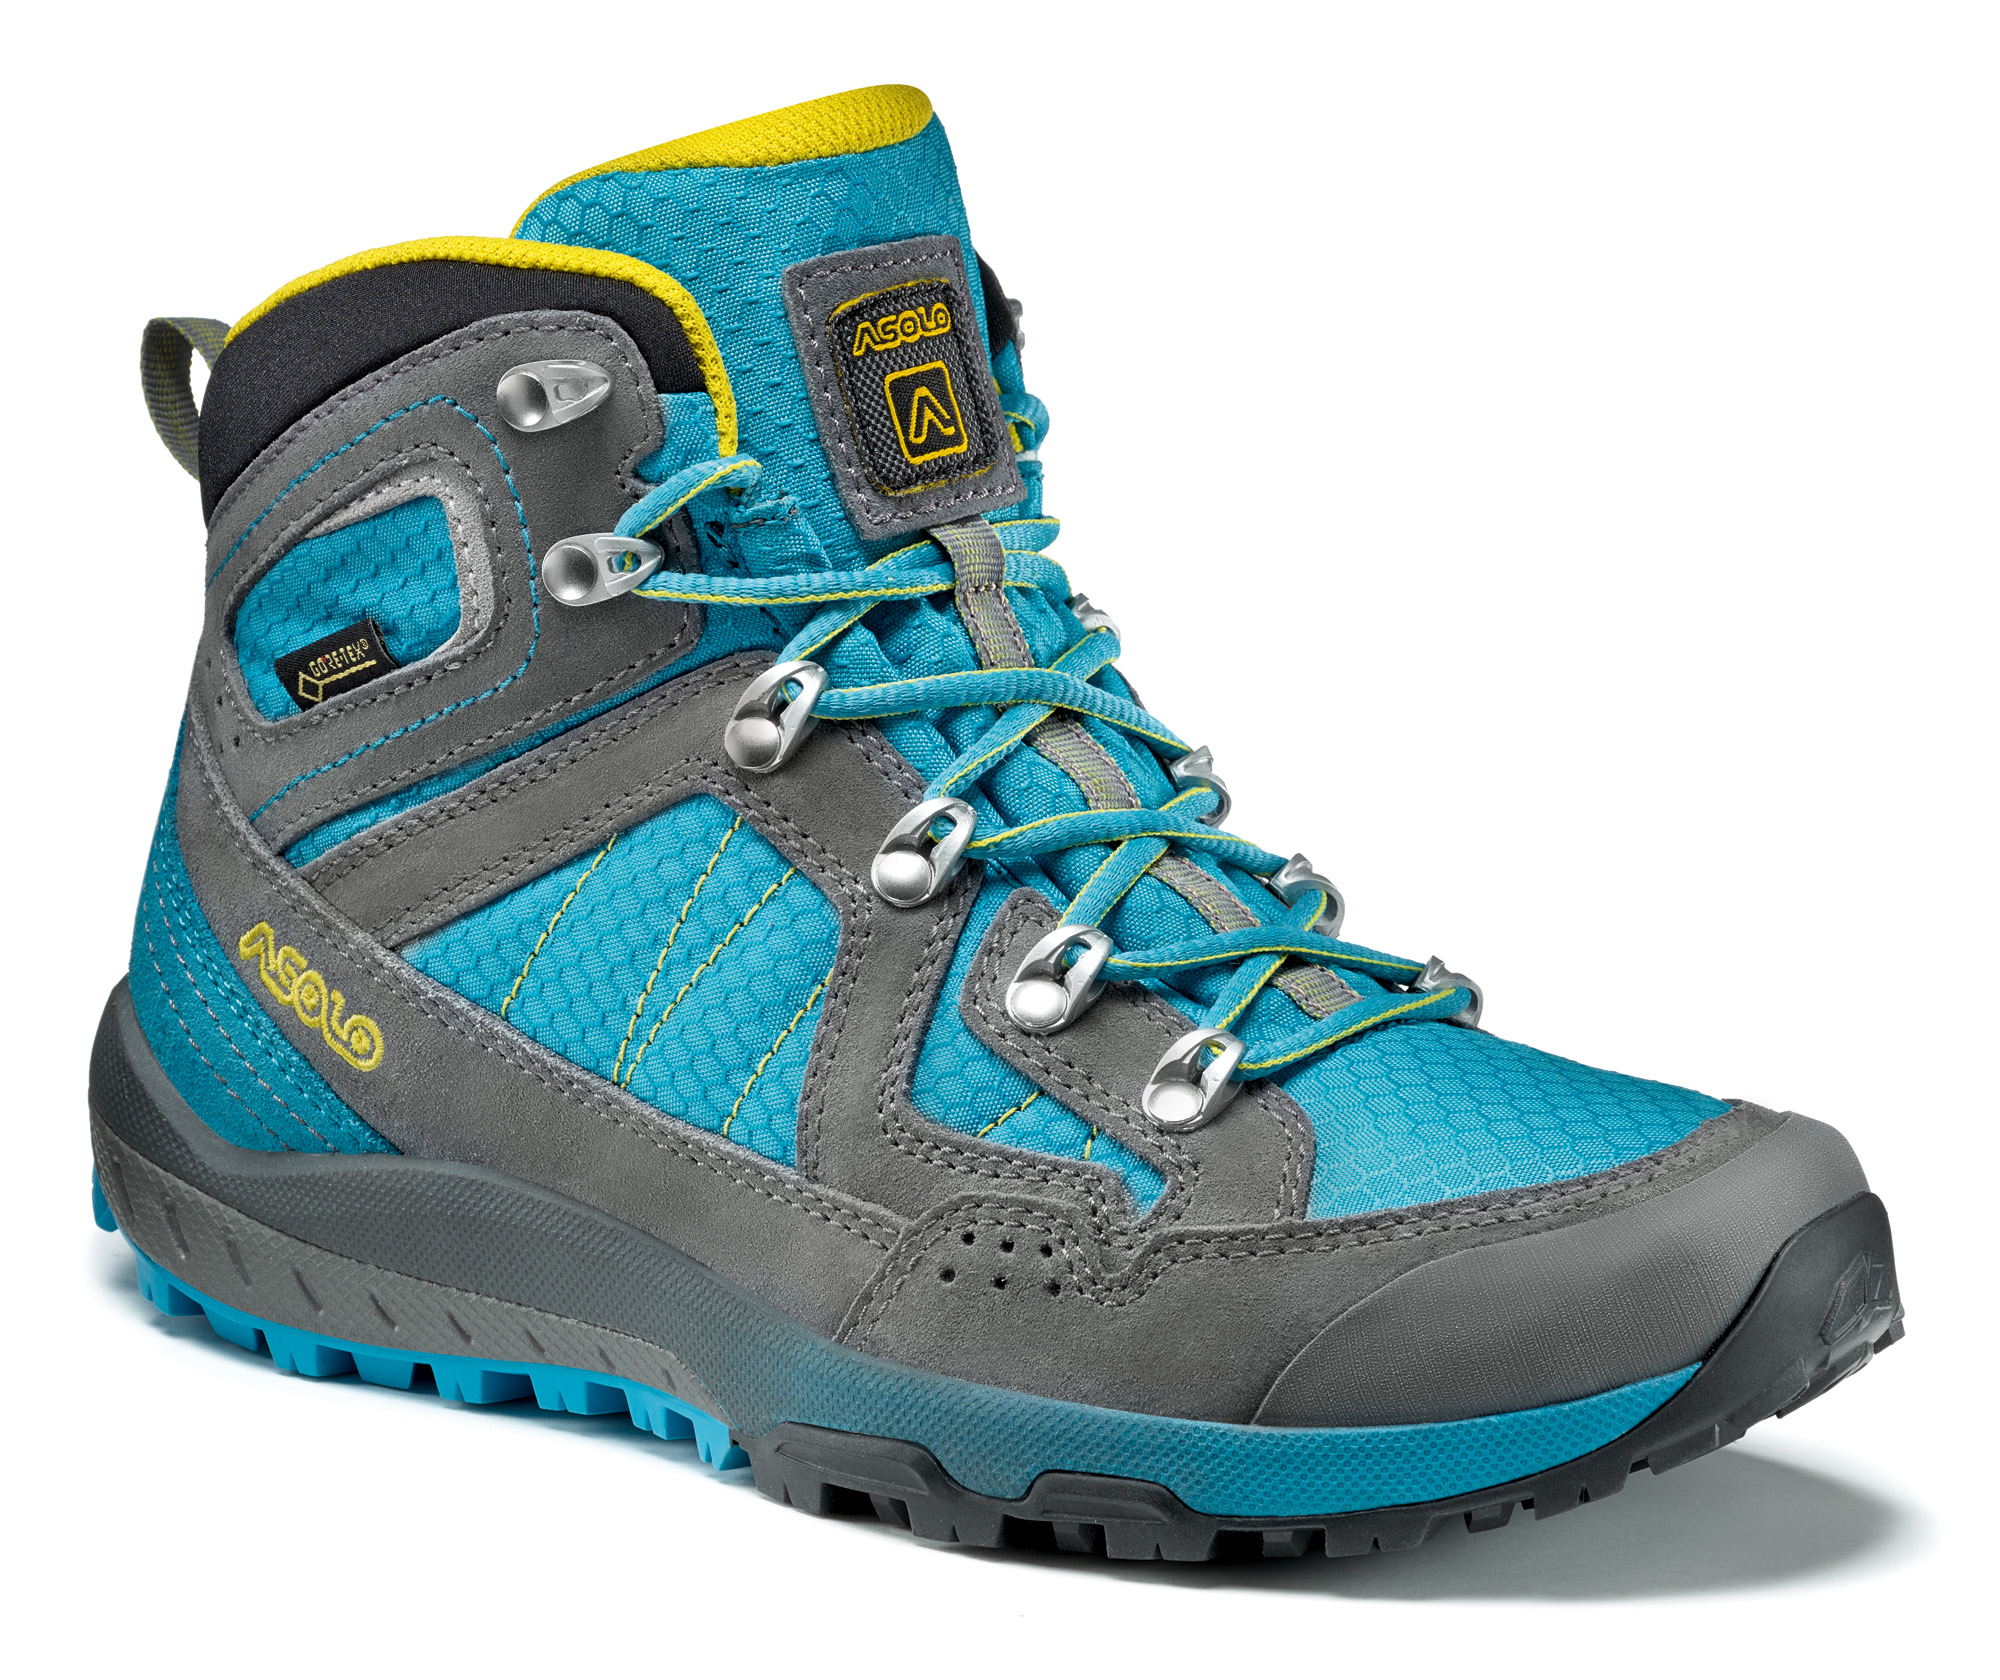 women's light hiking boots